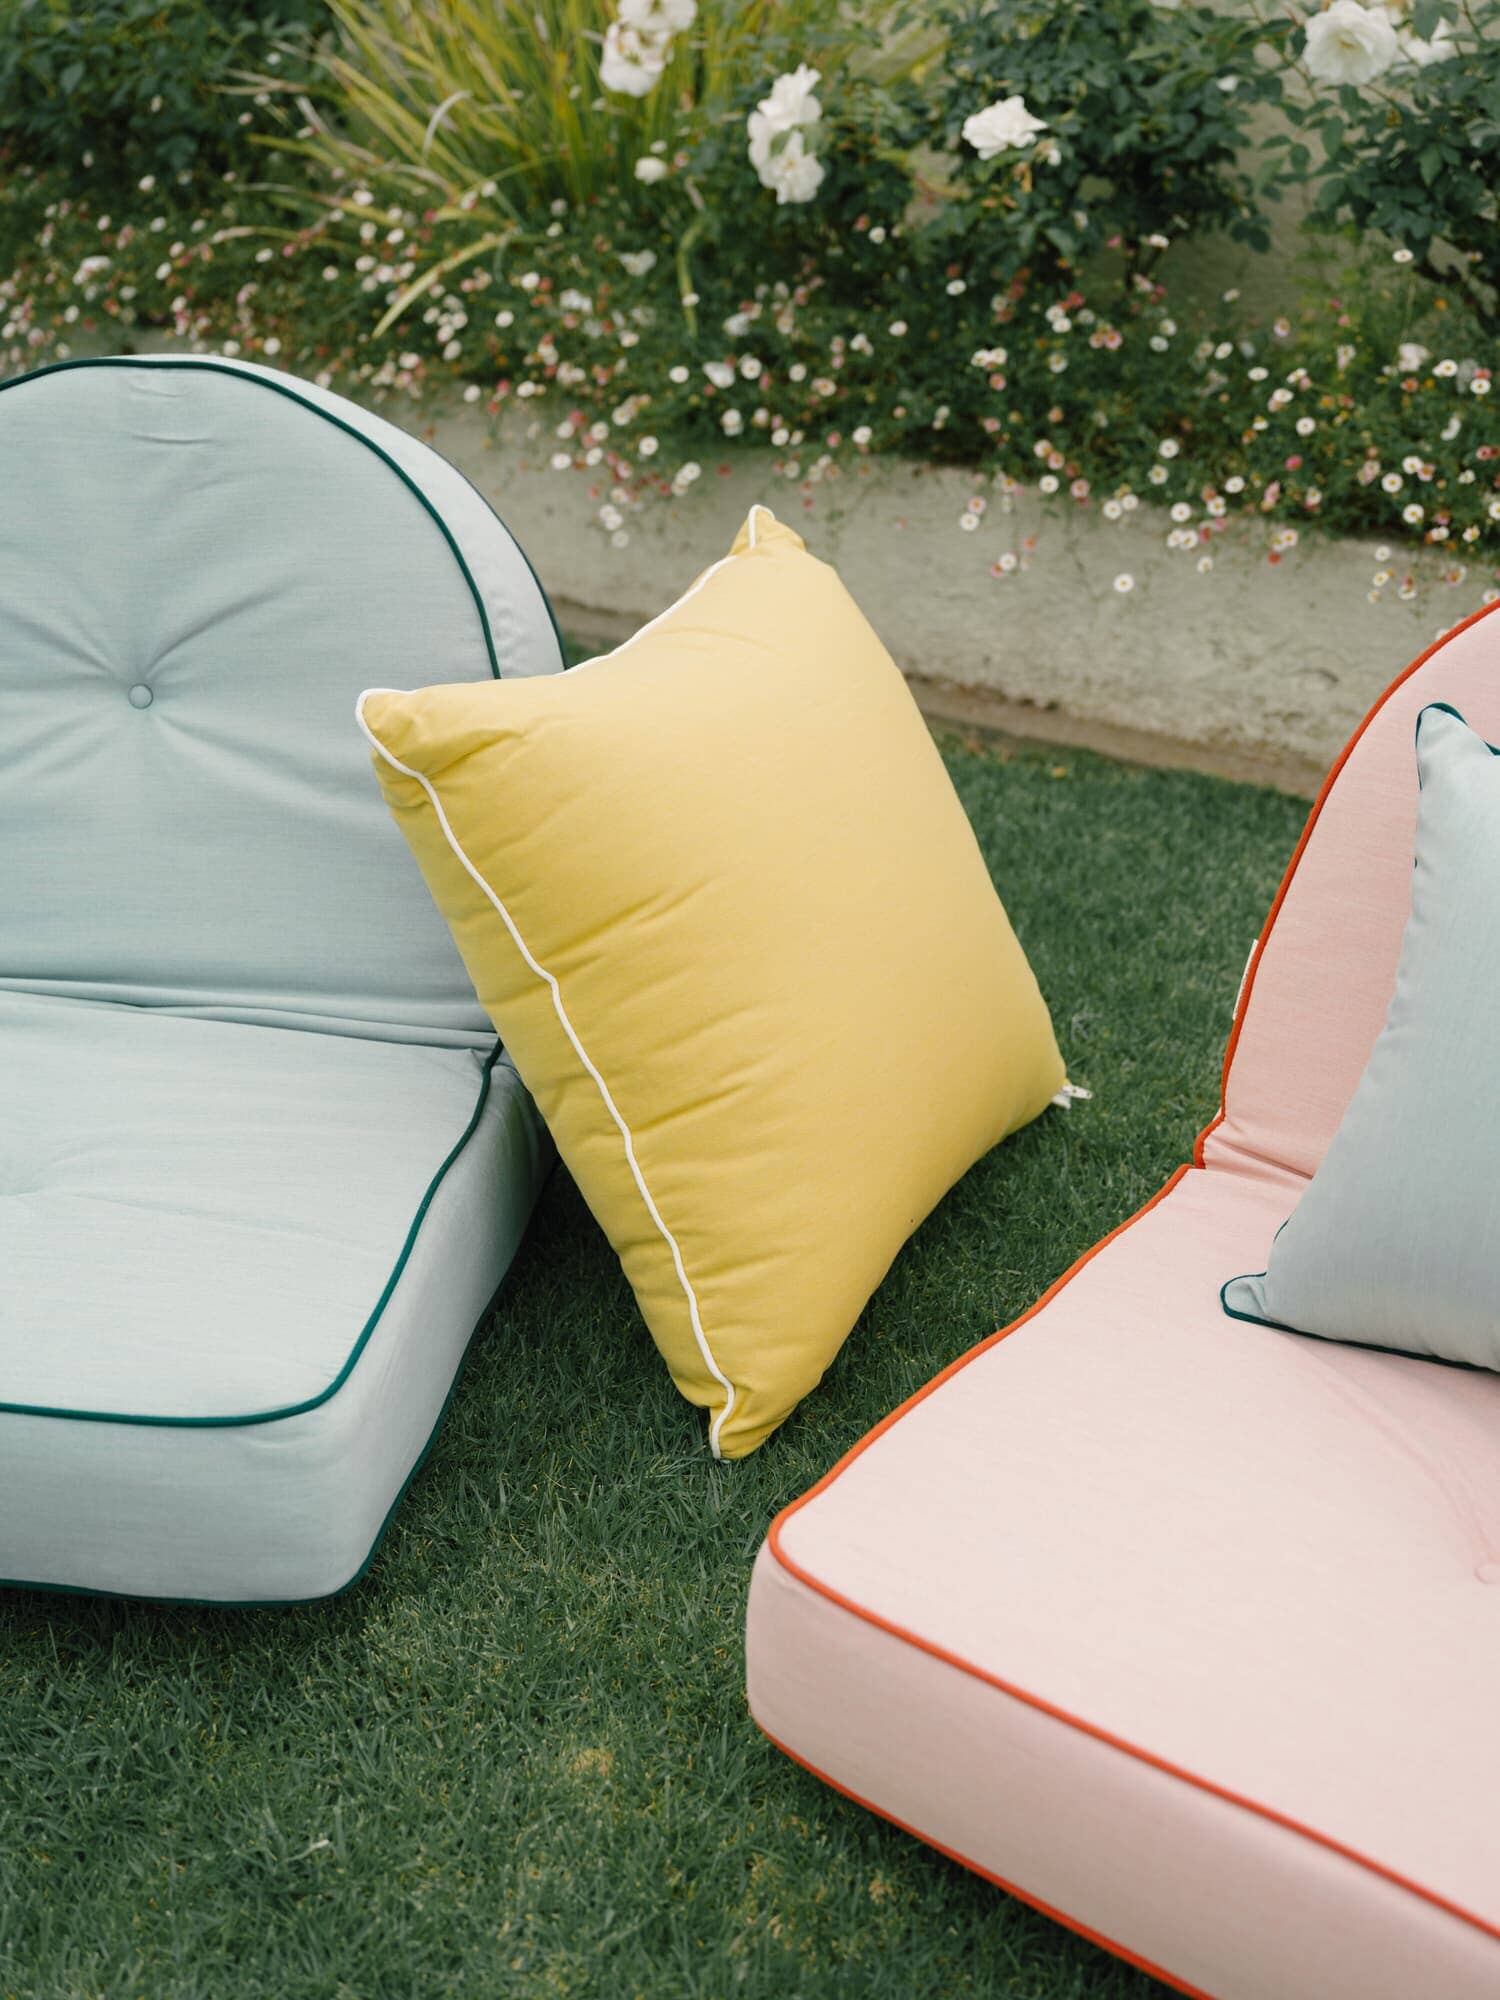 Riviera outdoor pillows in a garden setting